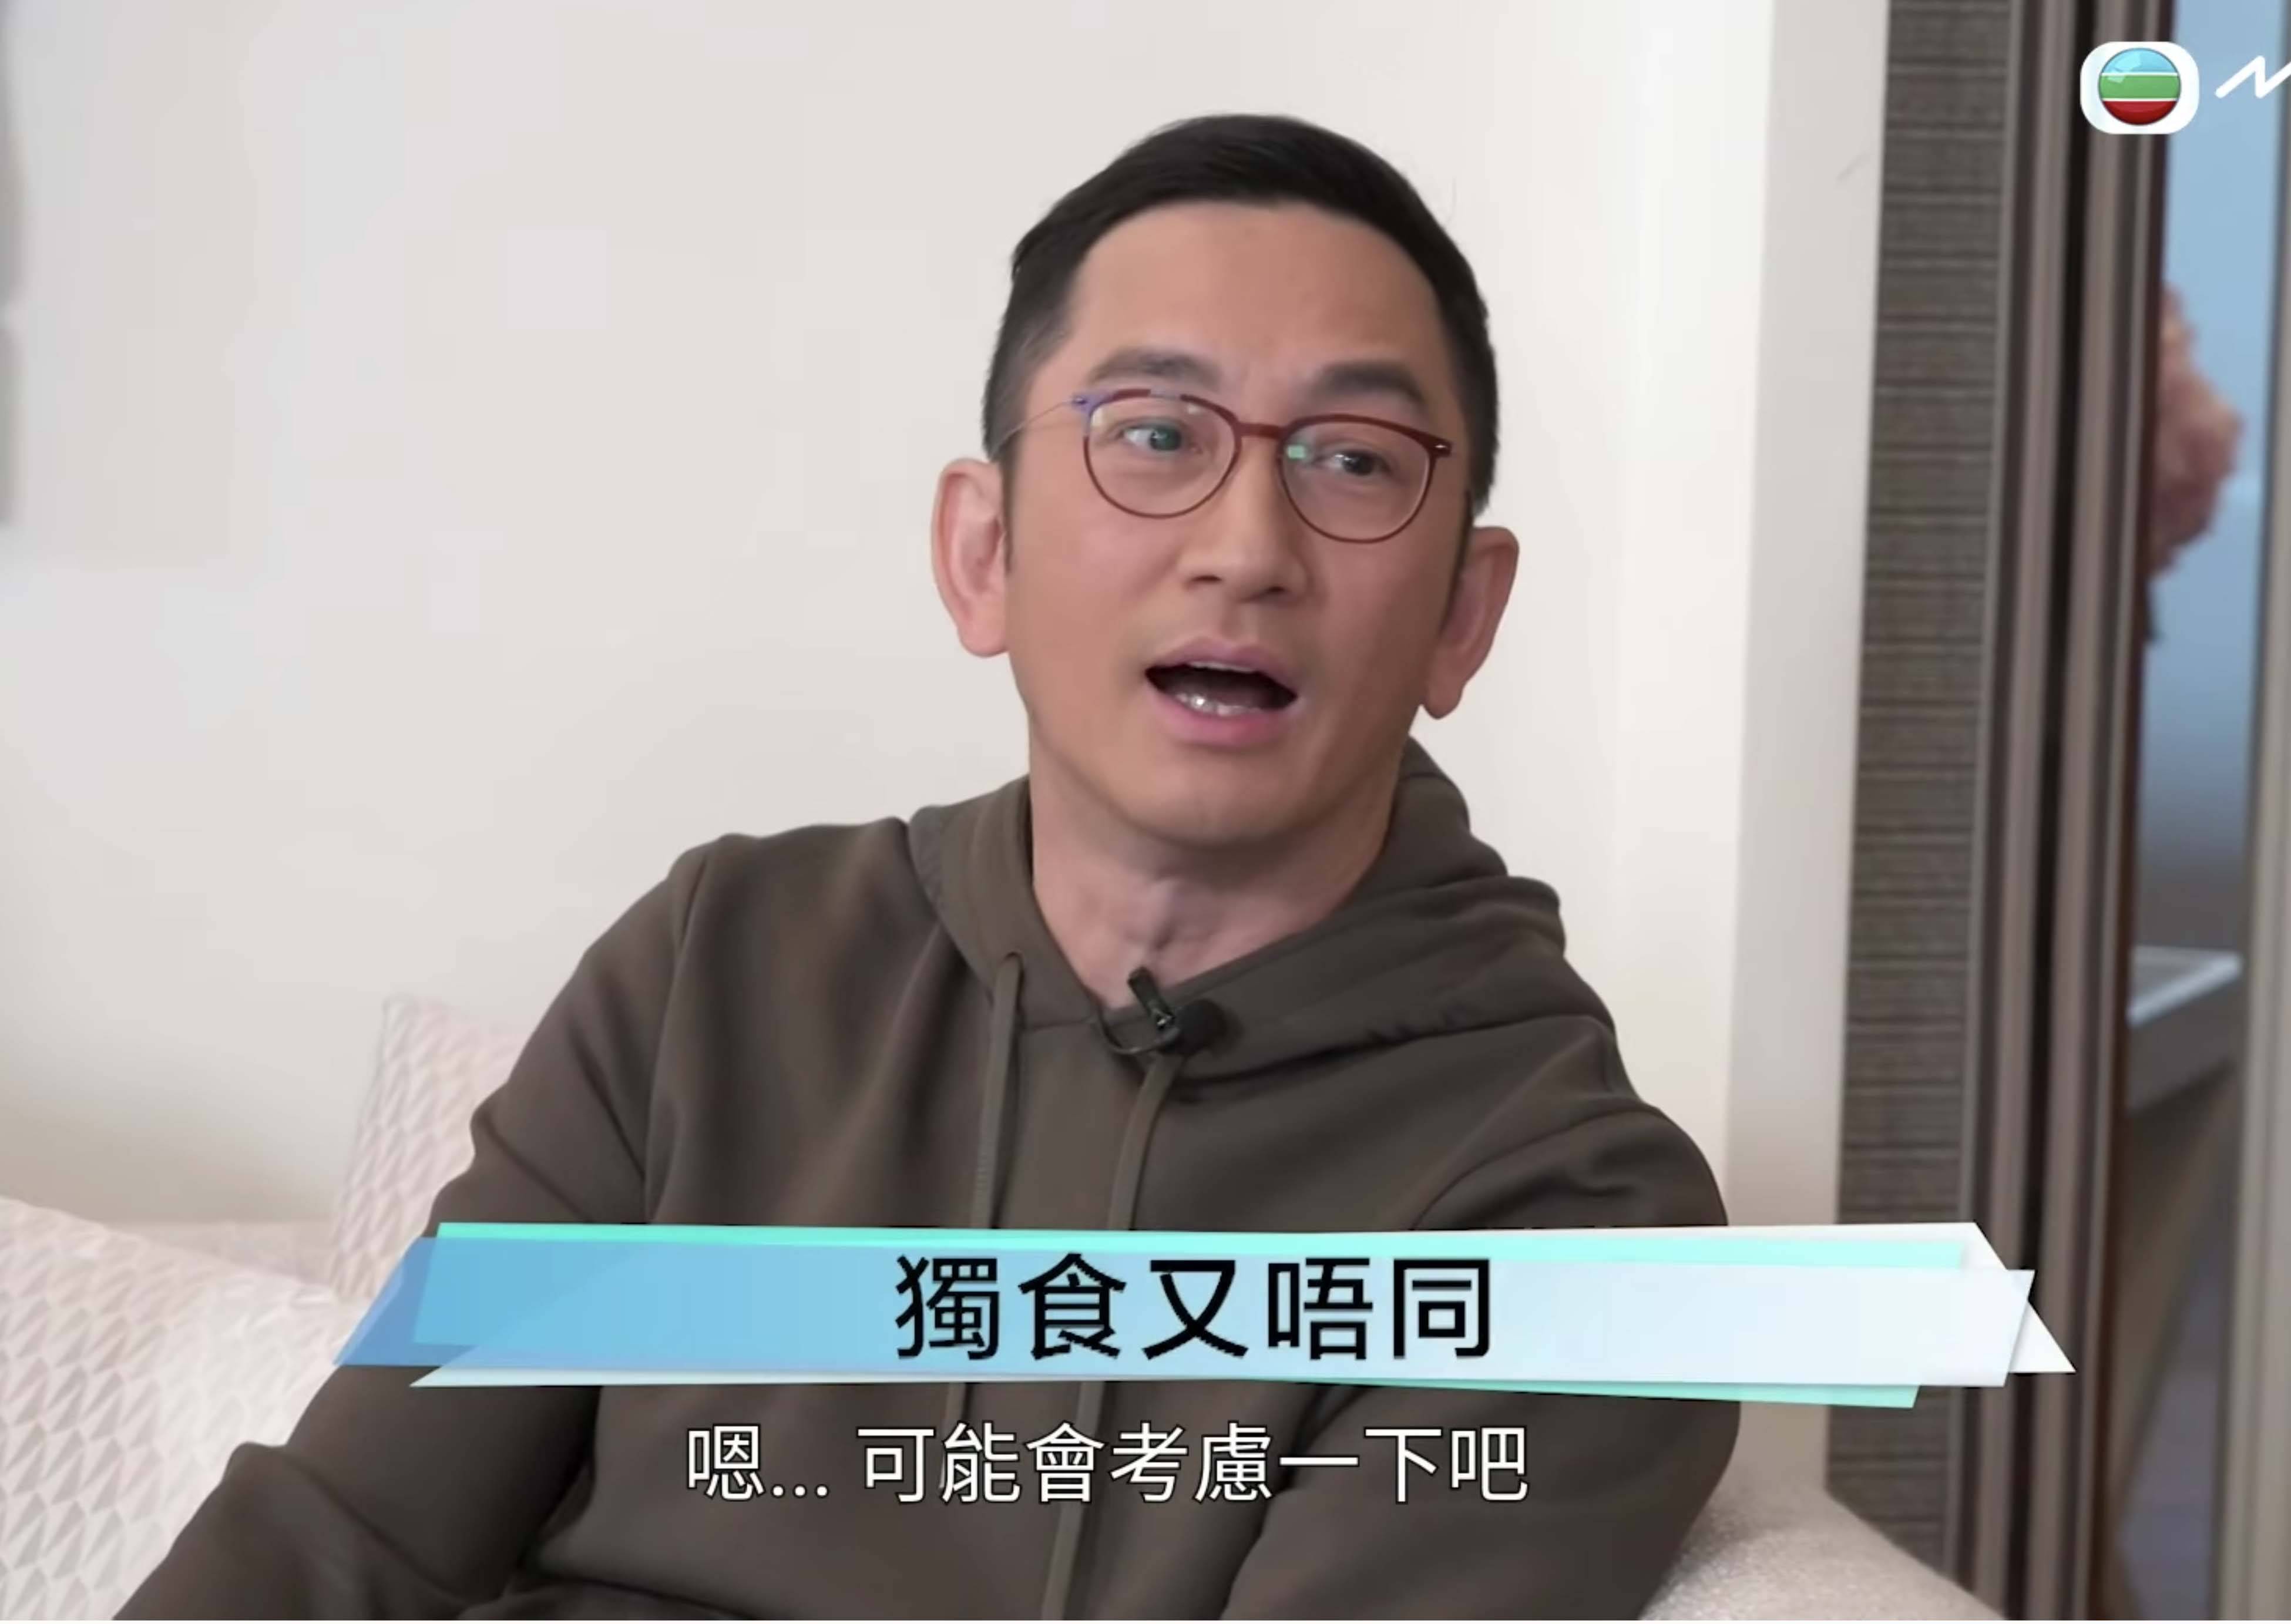 吳啟華長駐內地發展，要養女同養埋前妻一家，今後說話要謹慎﹗ 圖片來源：YouTube@TVB《Tiger